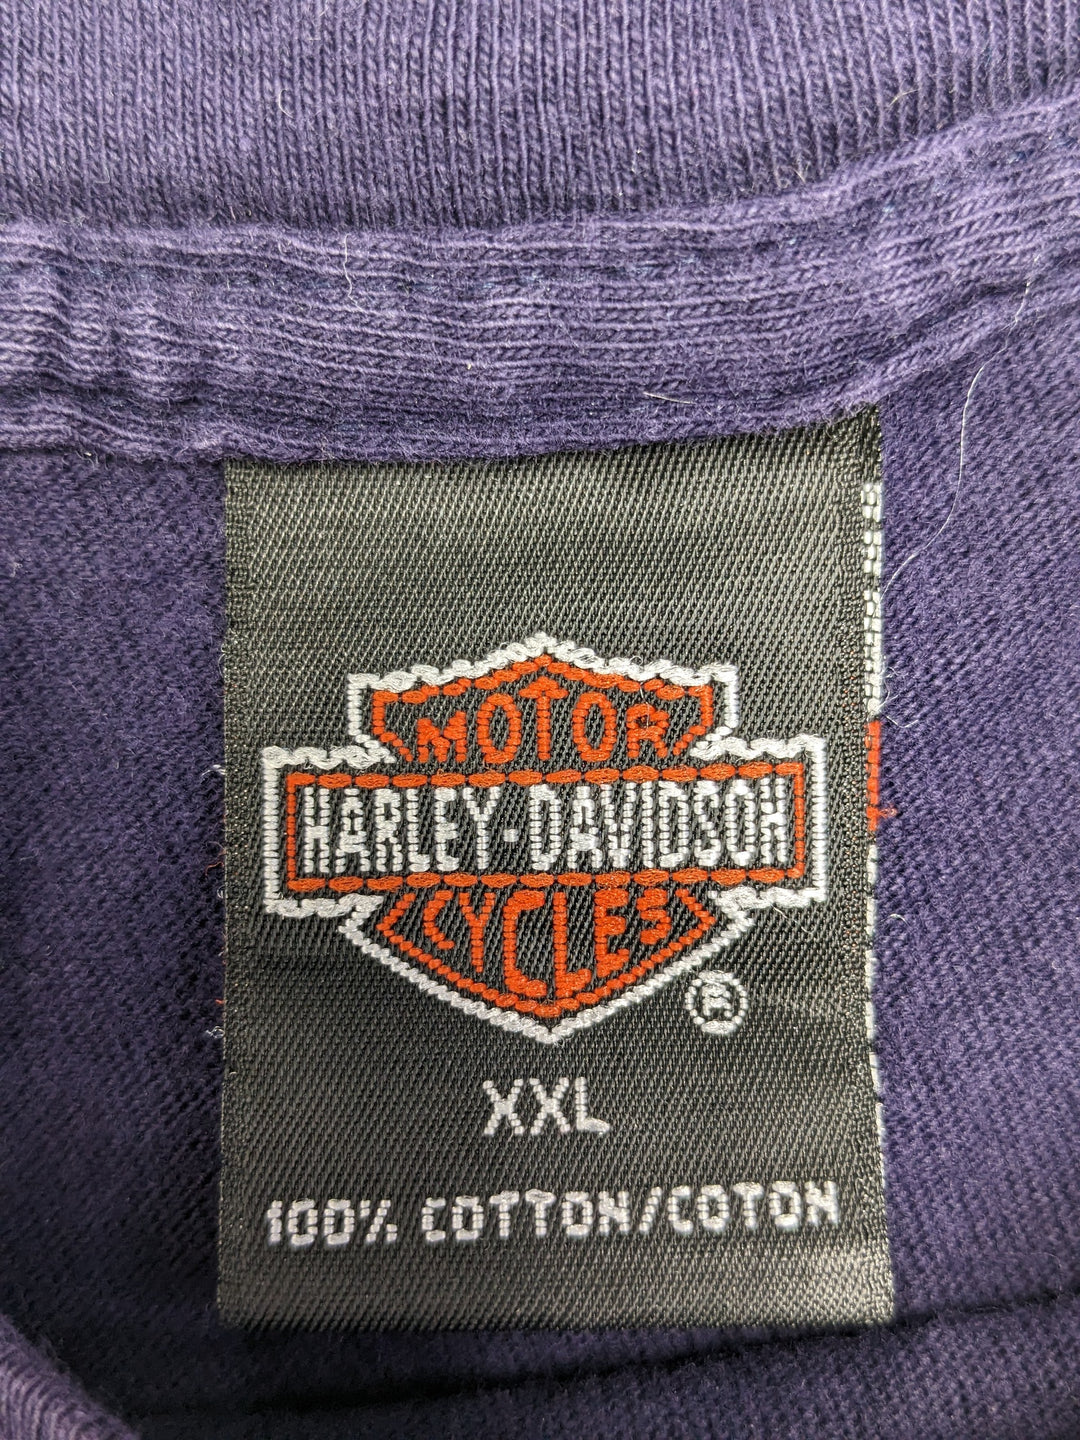 2000 Harley Davidson T-Shirt 1 pc 1 lb C0124203 - Raghouse